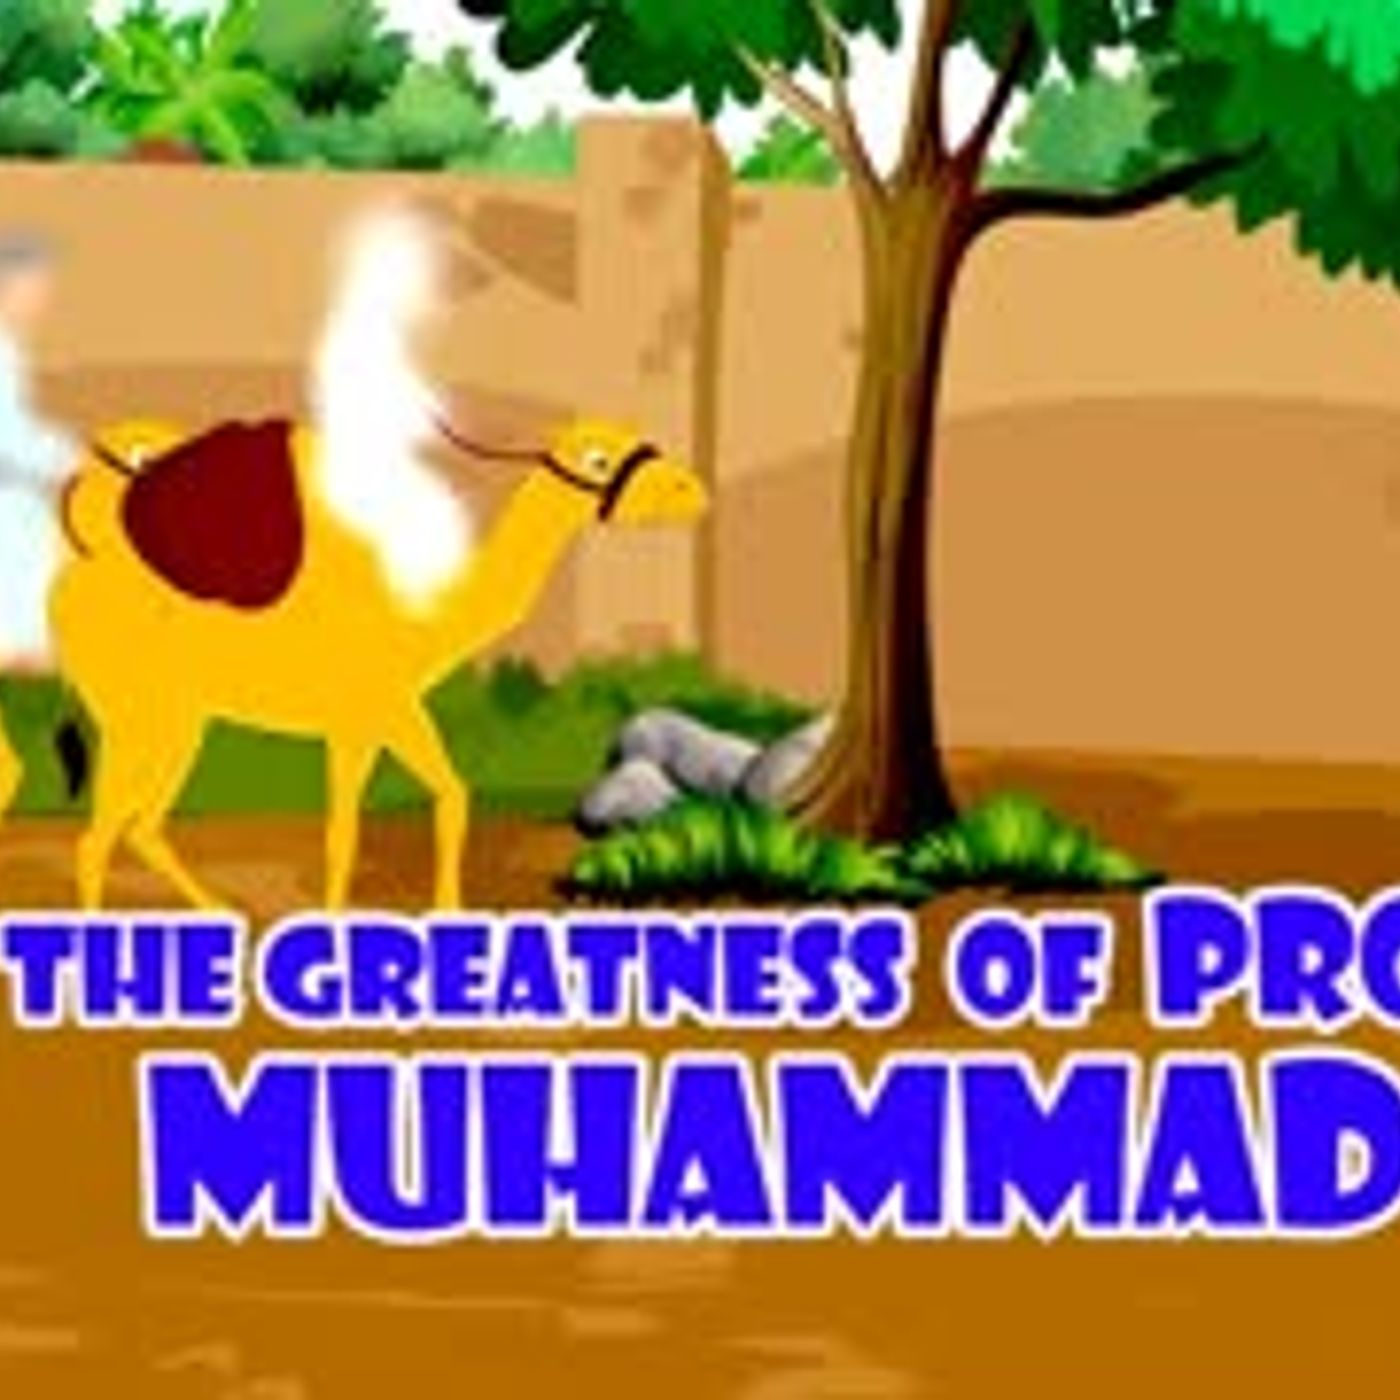 Prophet Stories In Urdu   Prophet Muhammad (SAW)   Part 4